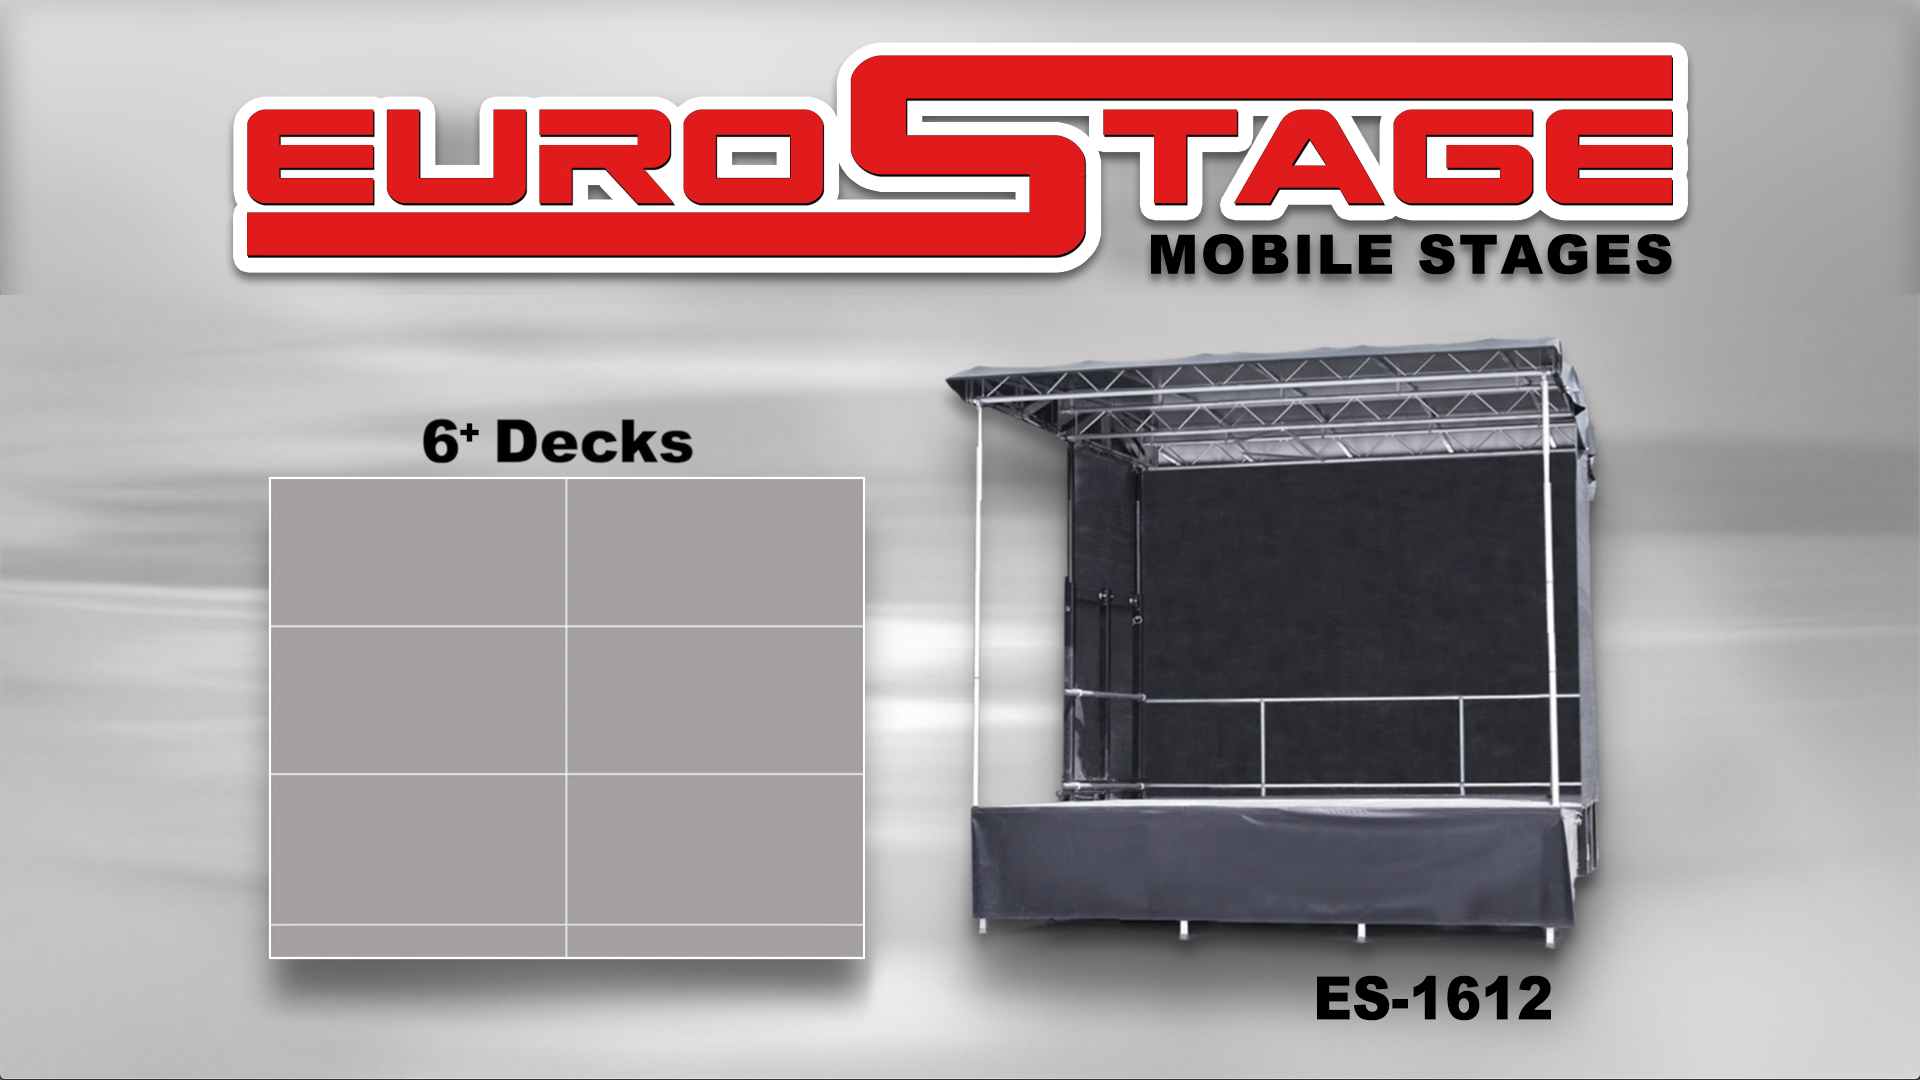 EuroStage ES-1612 Mobile Stage